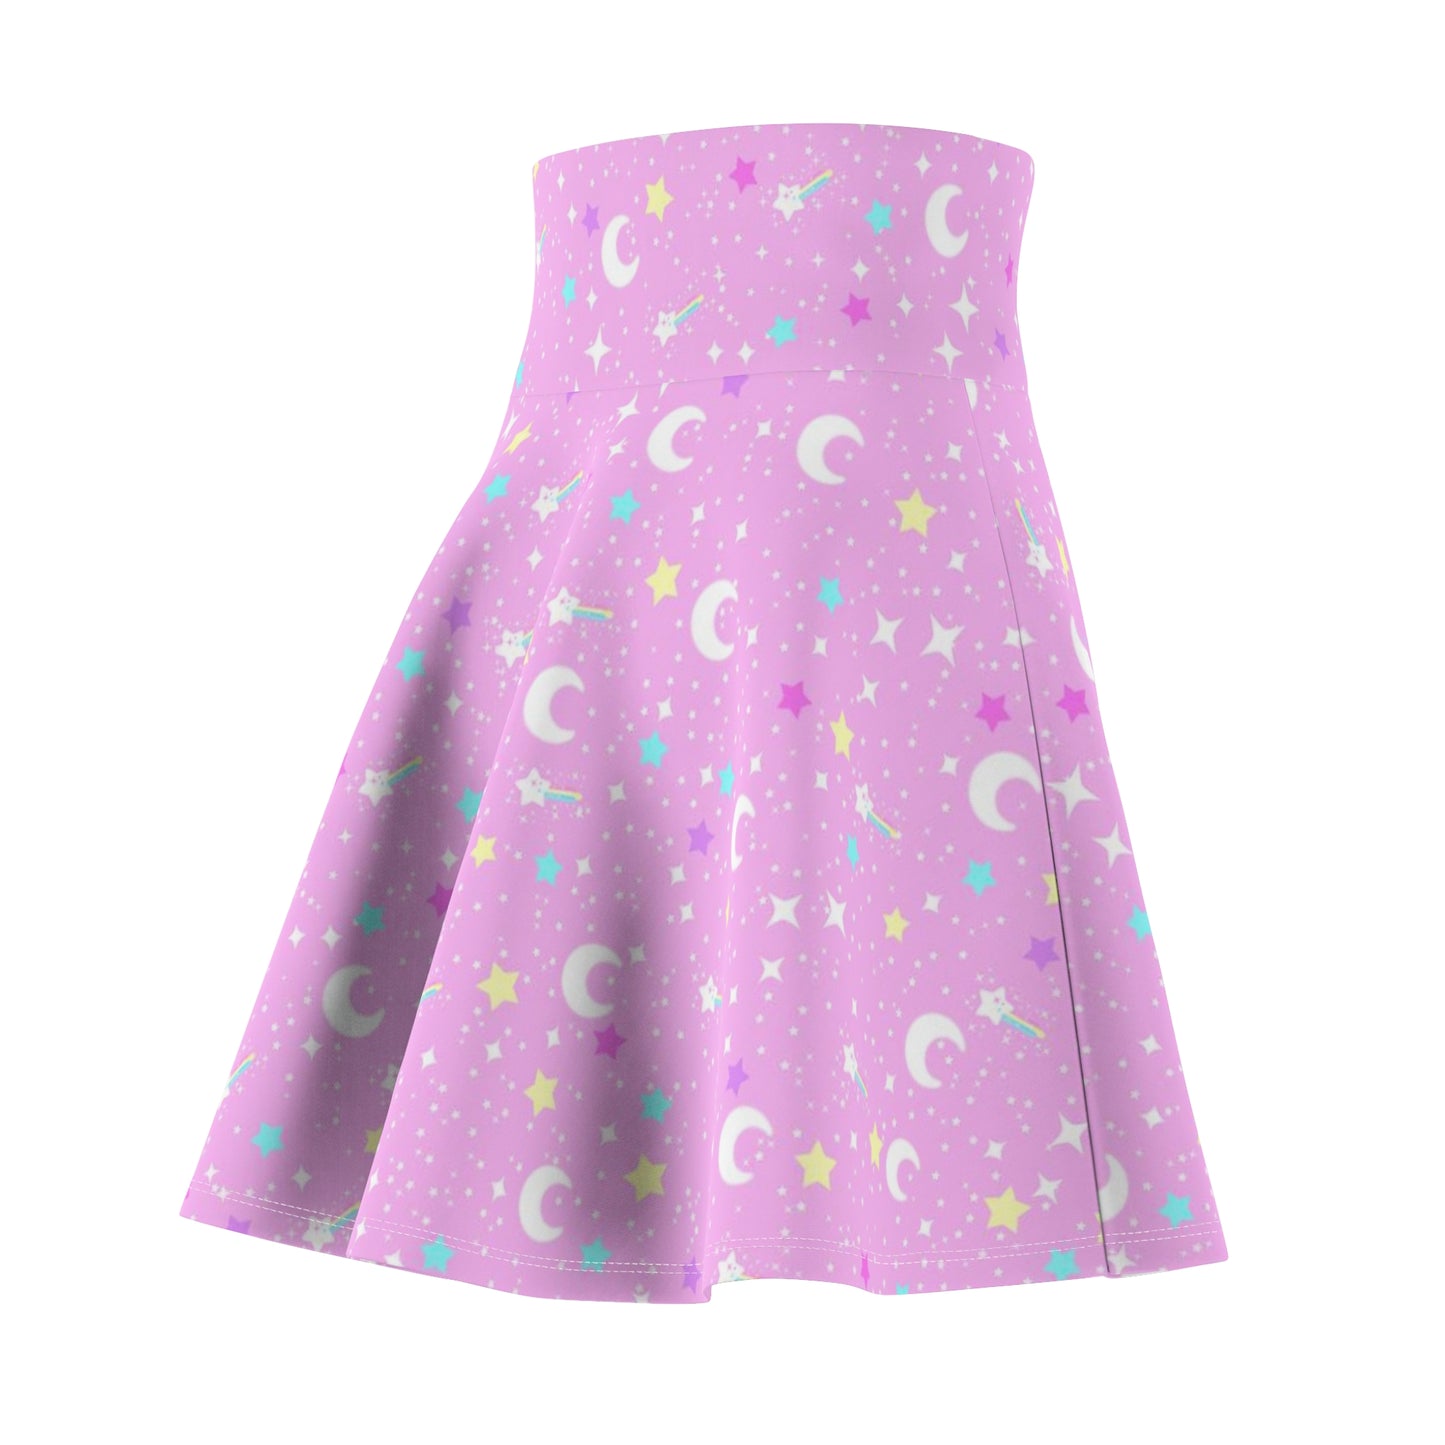 Starry Glitter Pink High Waist Skater Skirt